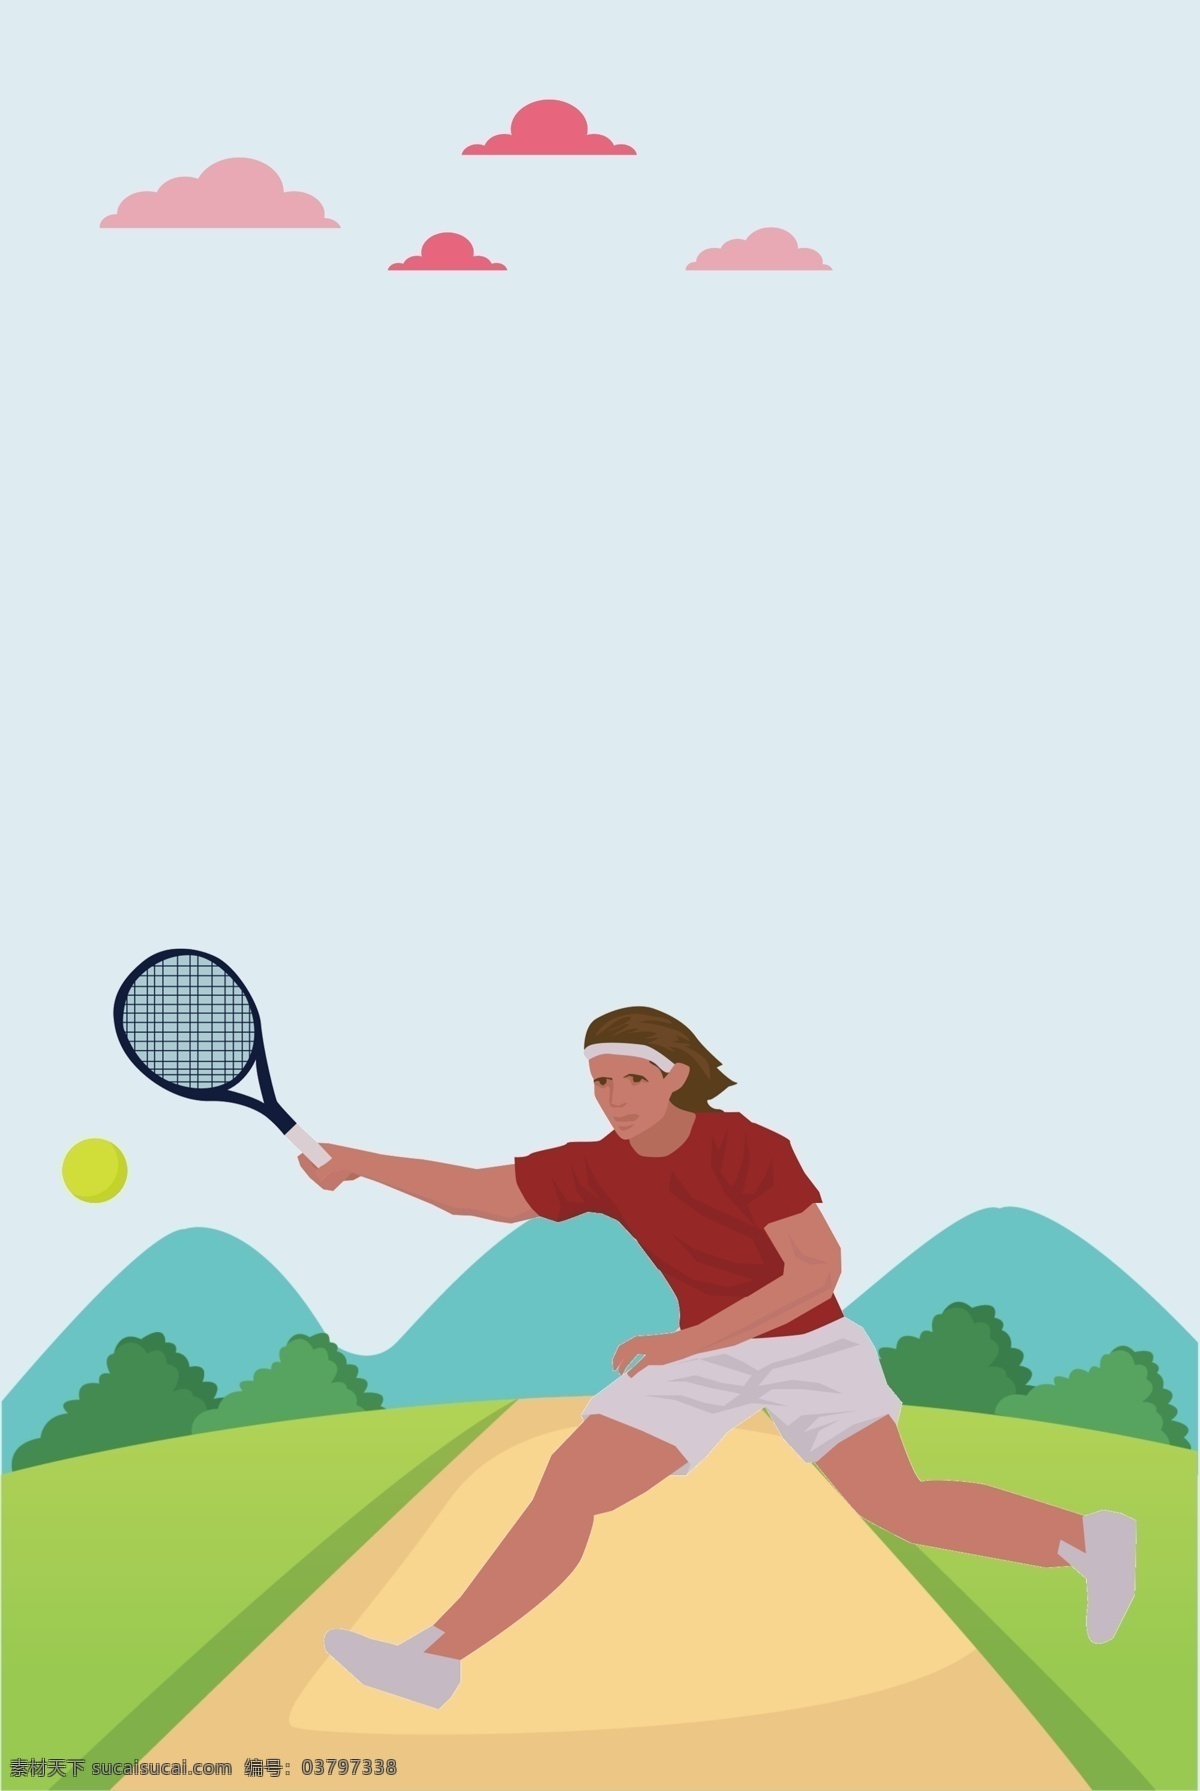 女子 网球 户外运动 场景 海报 女子打网球 郊外 手绘卡通 简约扁平插画 运动宣传 展板 背景